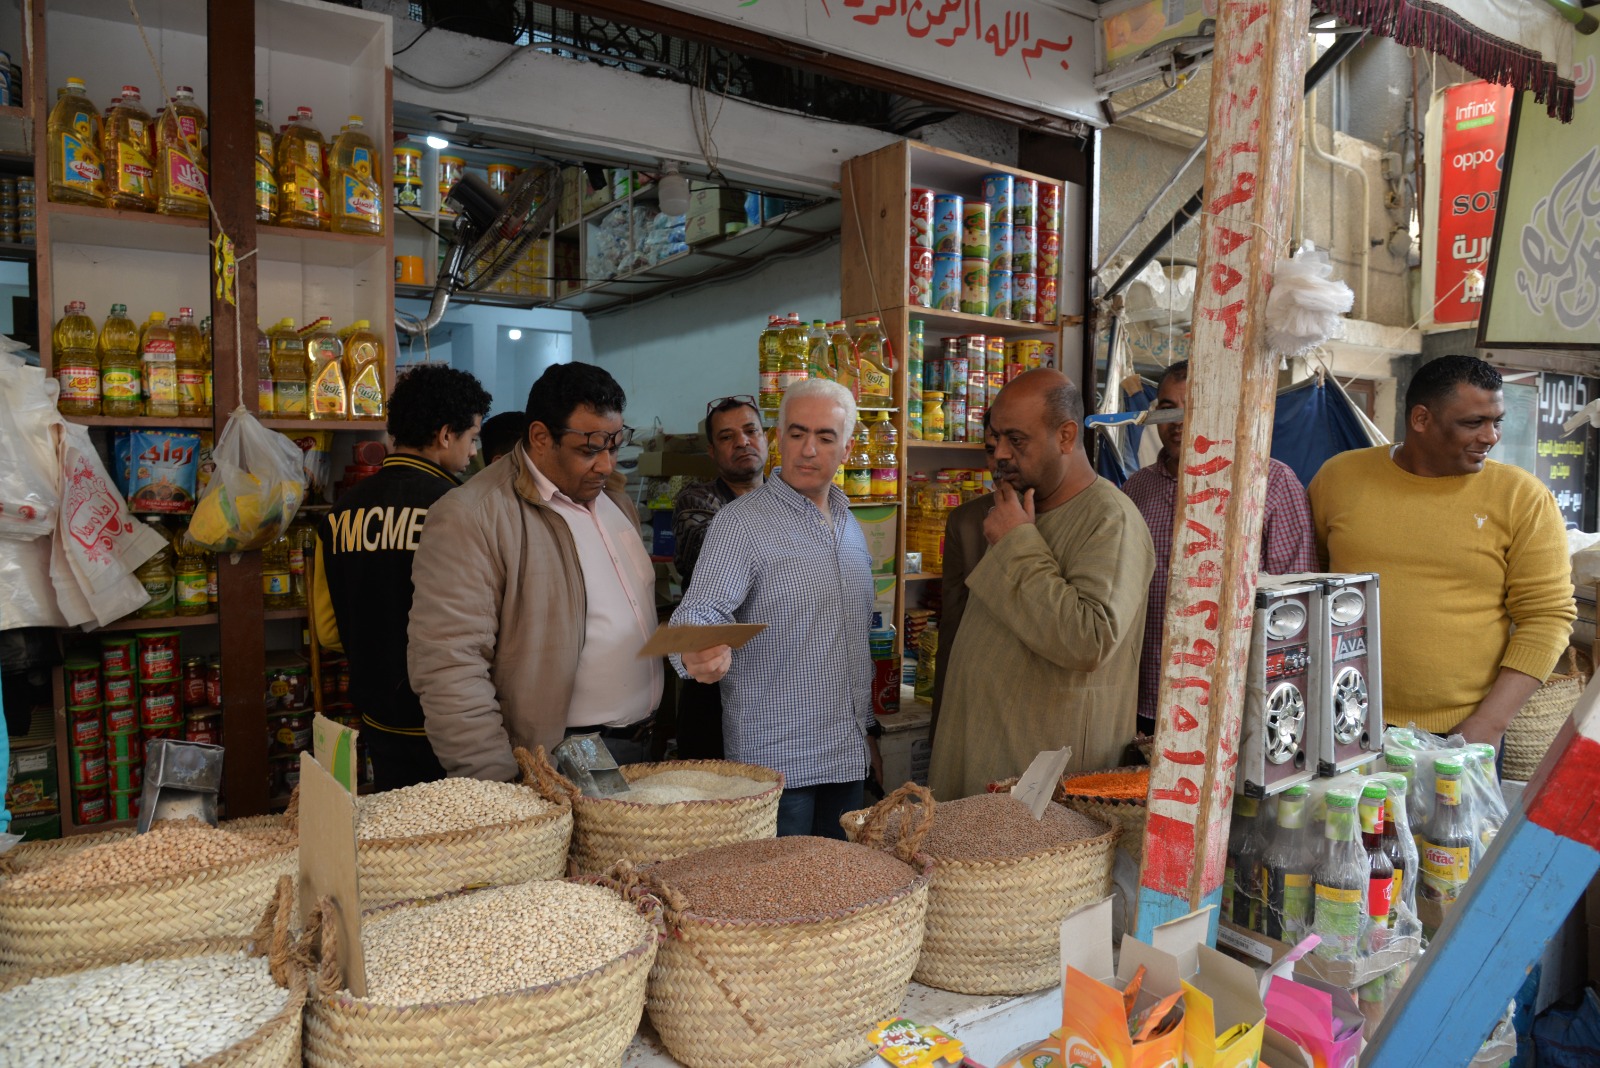 حملة تموينية لضبط ومراقبة الأسواق والأسعار بمدينة الإسماعيلية (3)